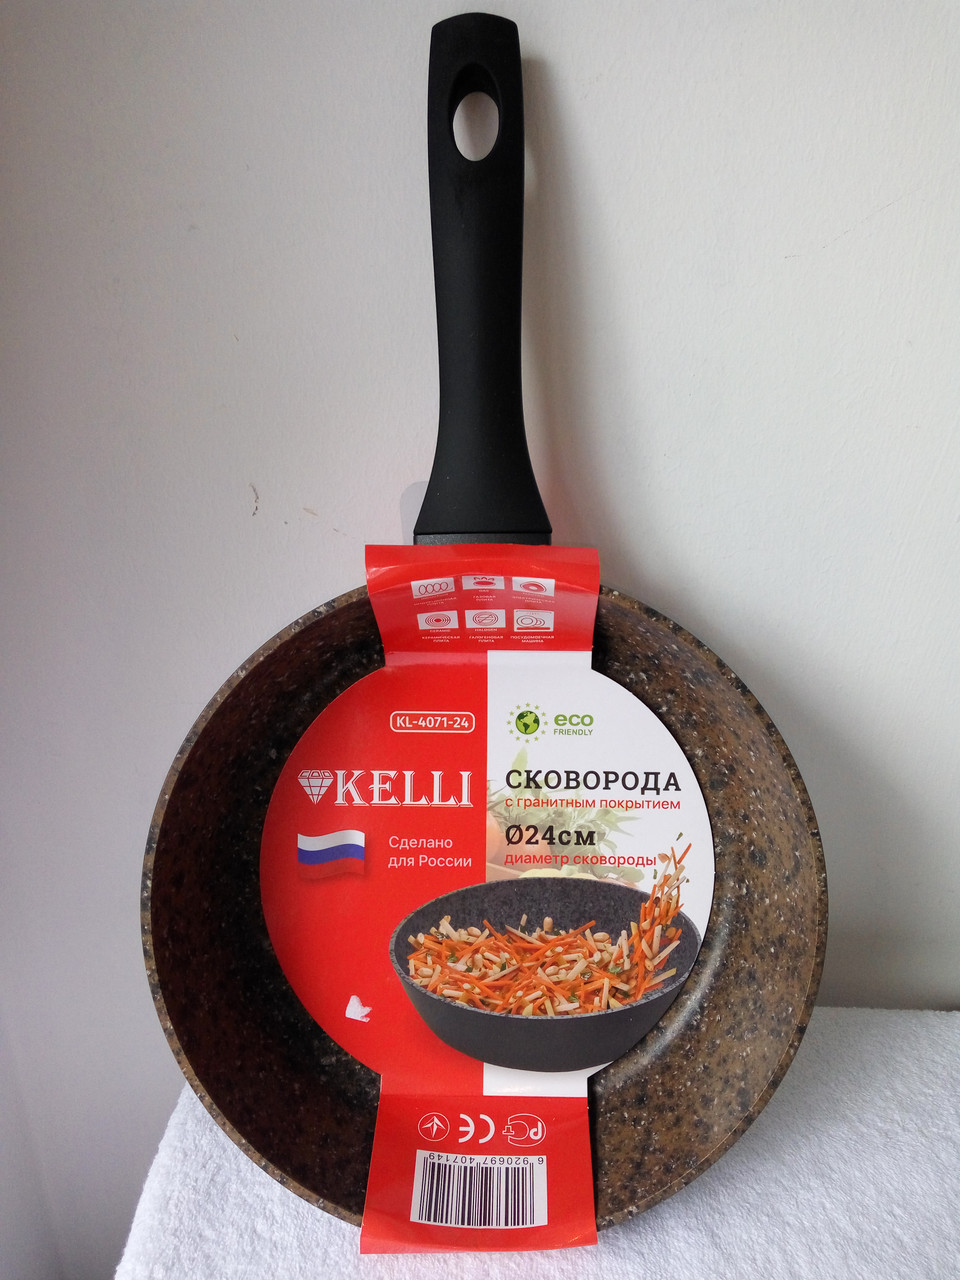 Сковорода с гранитным покрытием Kelli 26 см, KL 4071 26